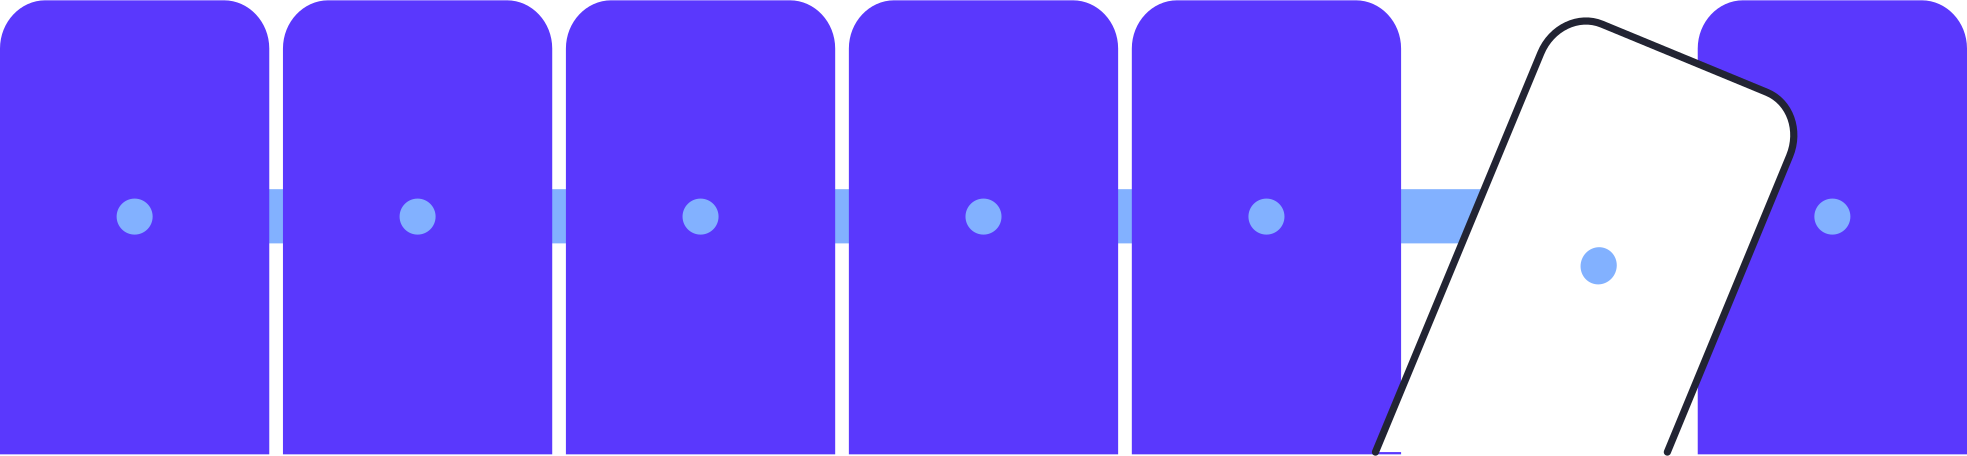 blue wooden fence Illustration in PNG, SVG